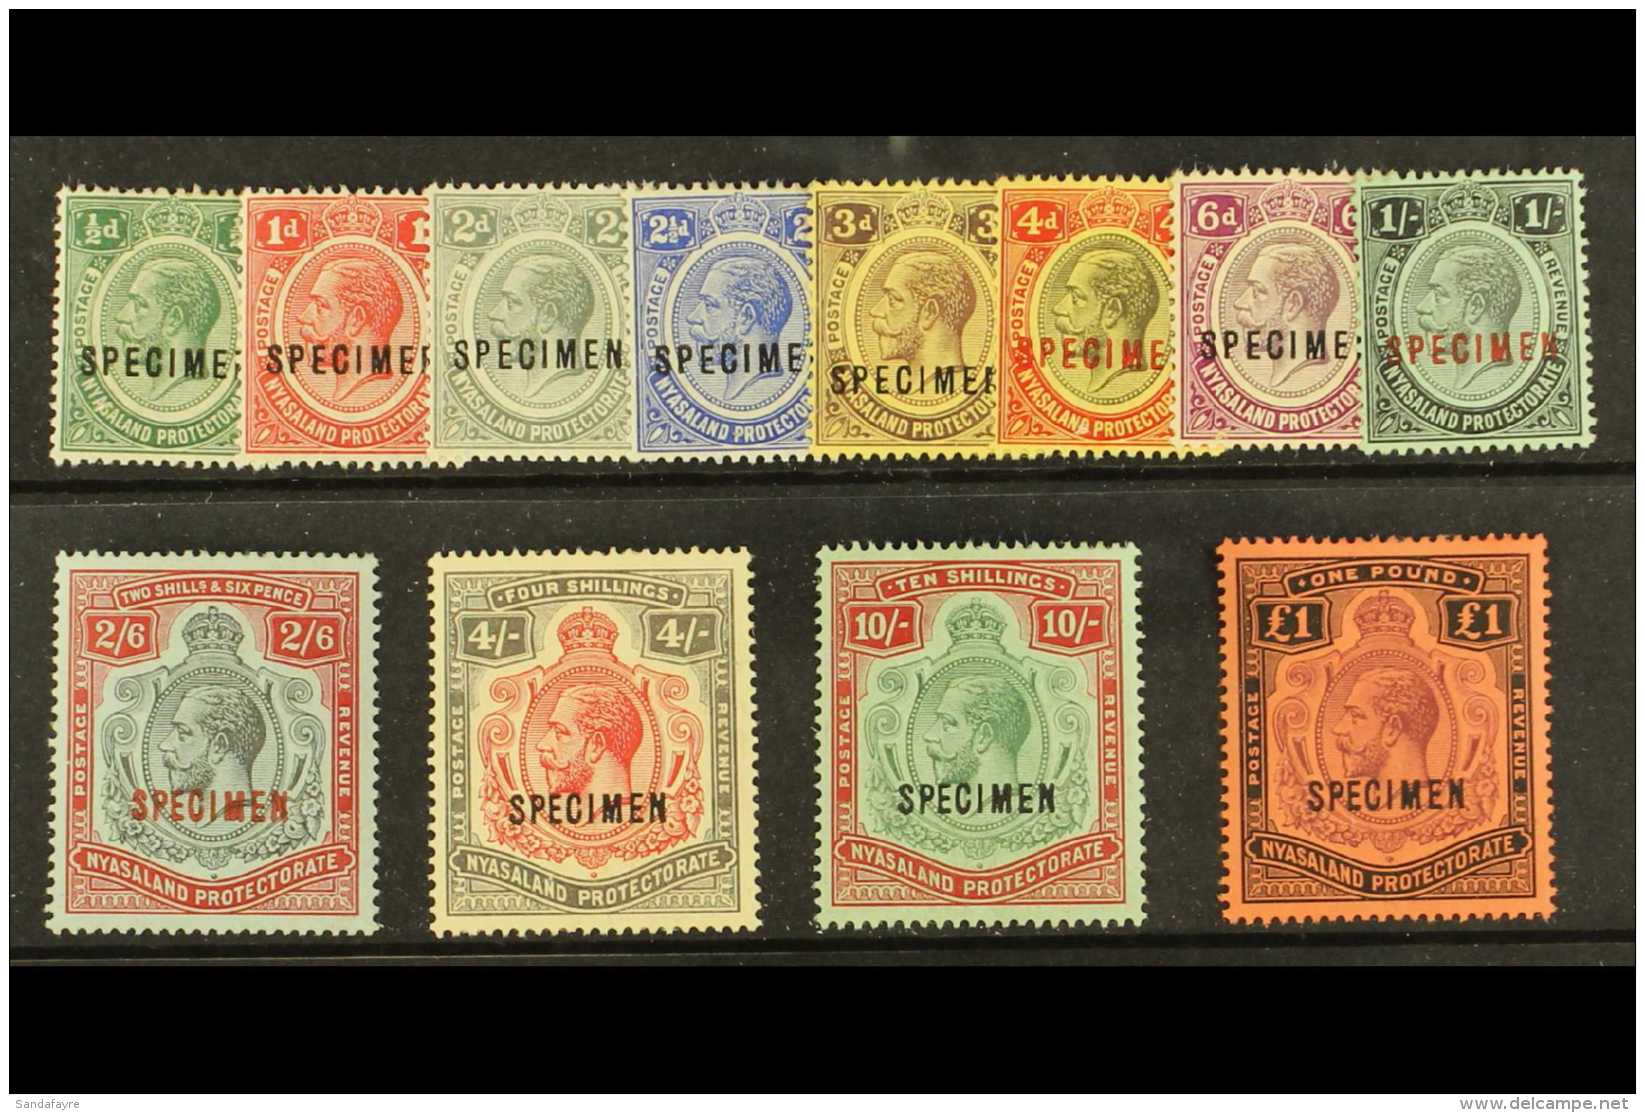 1913 Geo V Set, Wmk MCA, Overprinted "Specimen", SG 83s/98s, Very Fine Mint, Large Part Og. Scarce Set. (12... - Nyassaland (1907-1953)